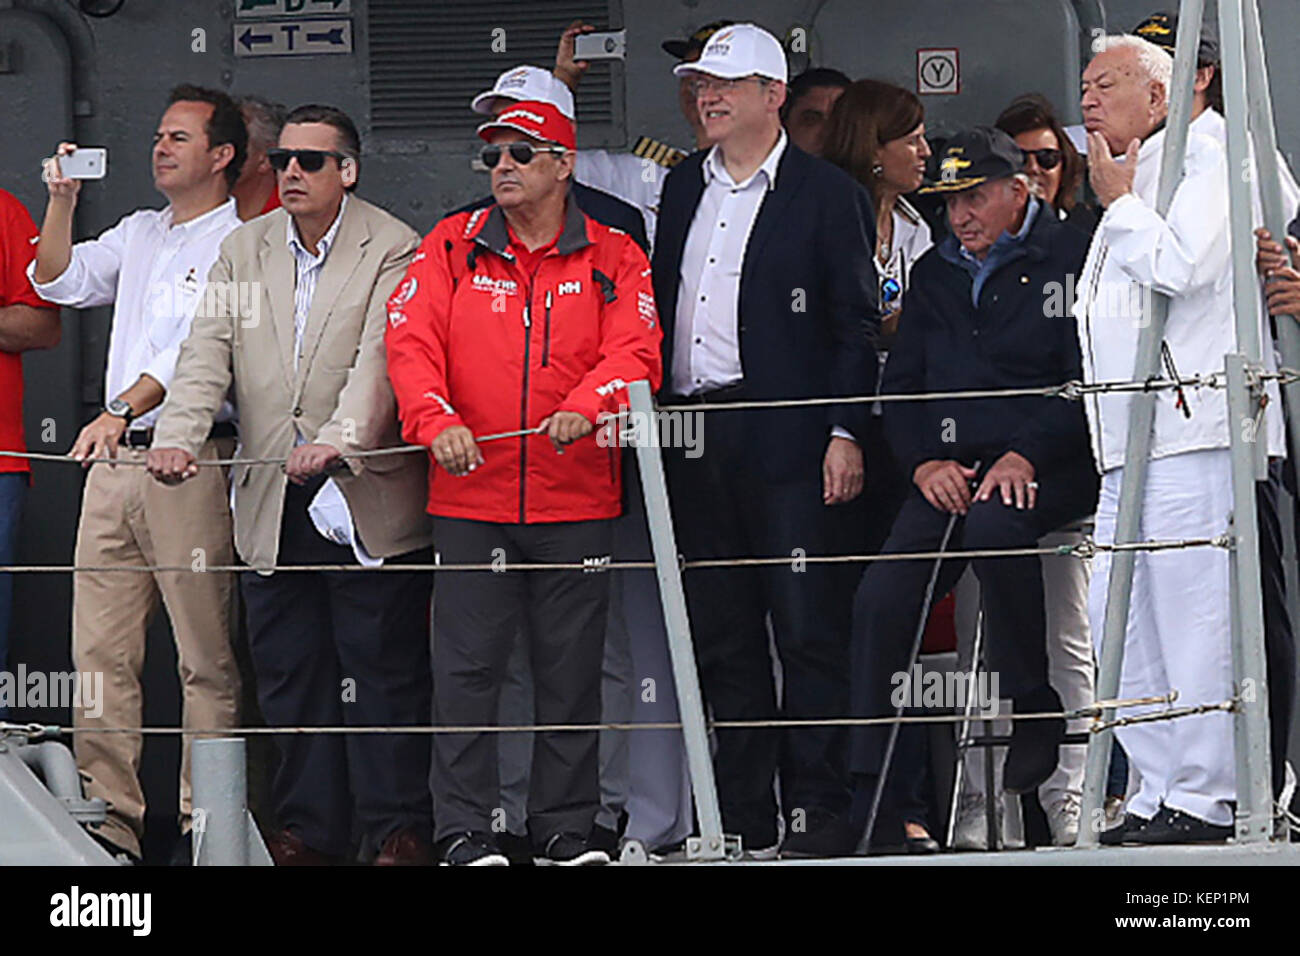 King Juan Carlos I and politicians Jose Manuel Garcia-Margallo and Ximo Puig attending Volvo Ocean Race in Alicante port, Spain. 22nd Oct, 2017. Credit: Gtres Información más Comuniación on line, S.L./Alamy Live News Stock Photo